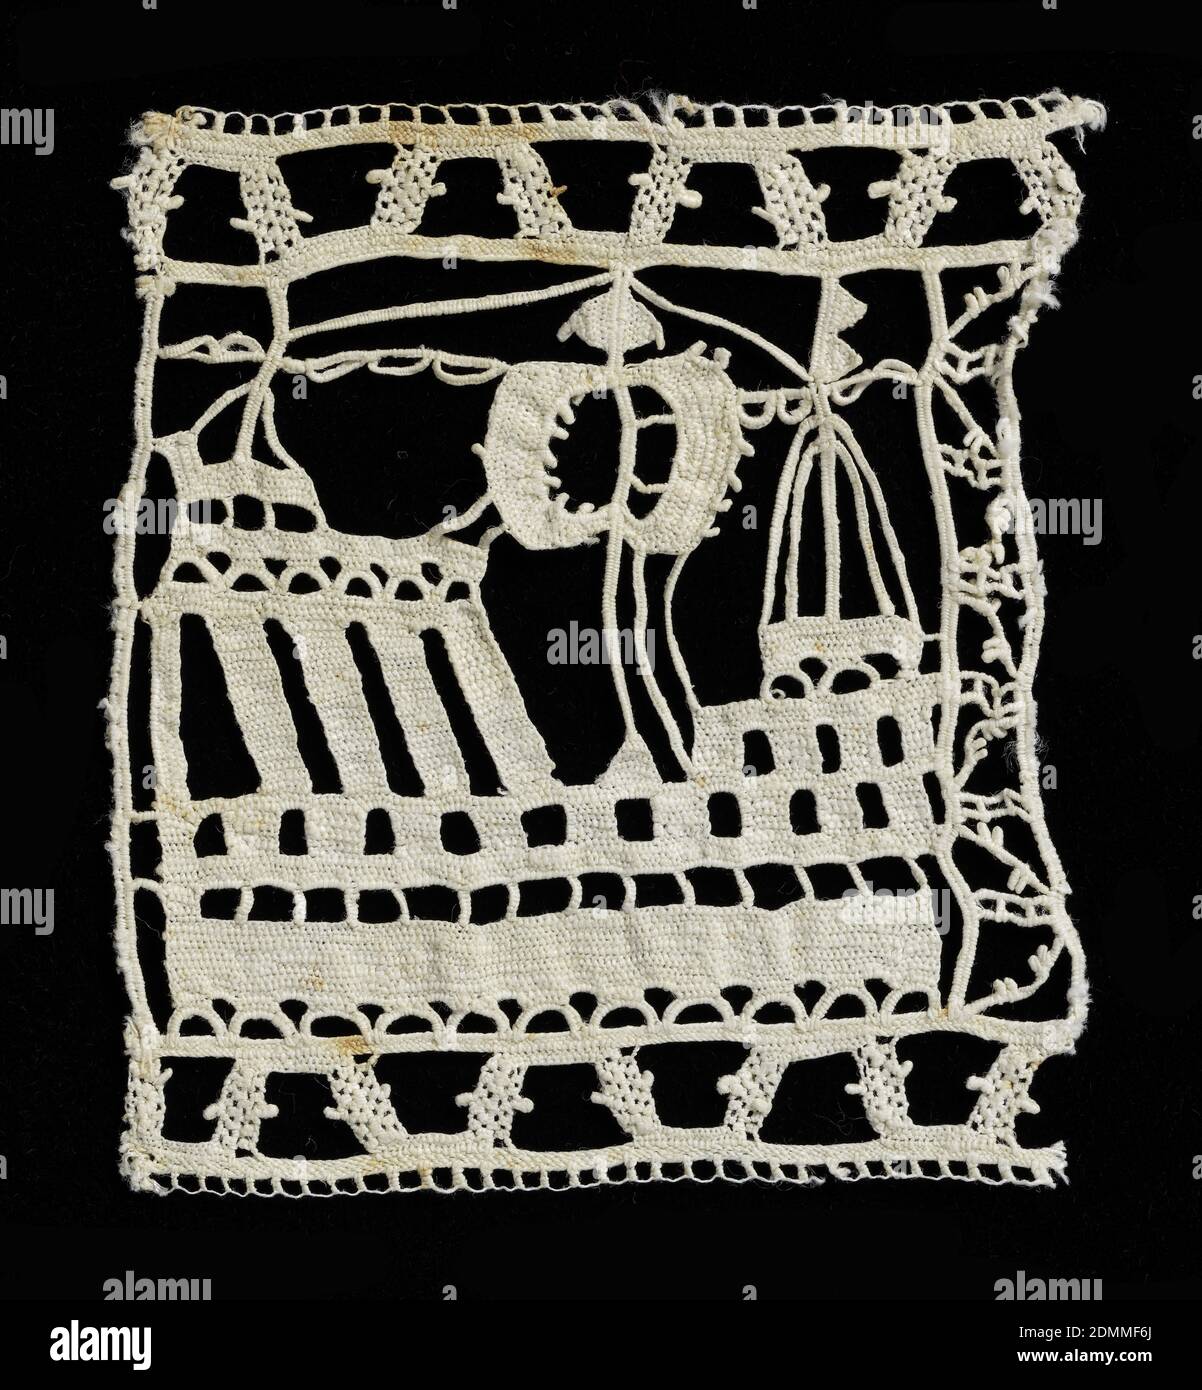 Fragment, Medium: linen technique: Dentelles aiguilles, style reticella, UN carré unique de dentelle contenant un bateau avec voiles., Espagne, début du XVIIe siècle, dentelle, fragment Banque D'Images